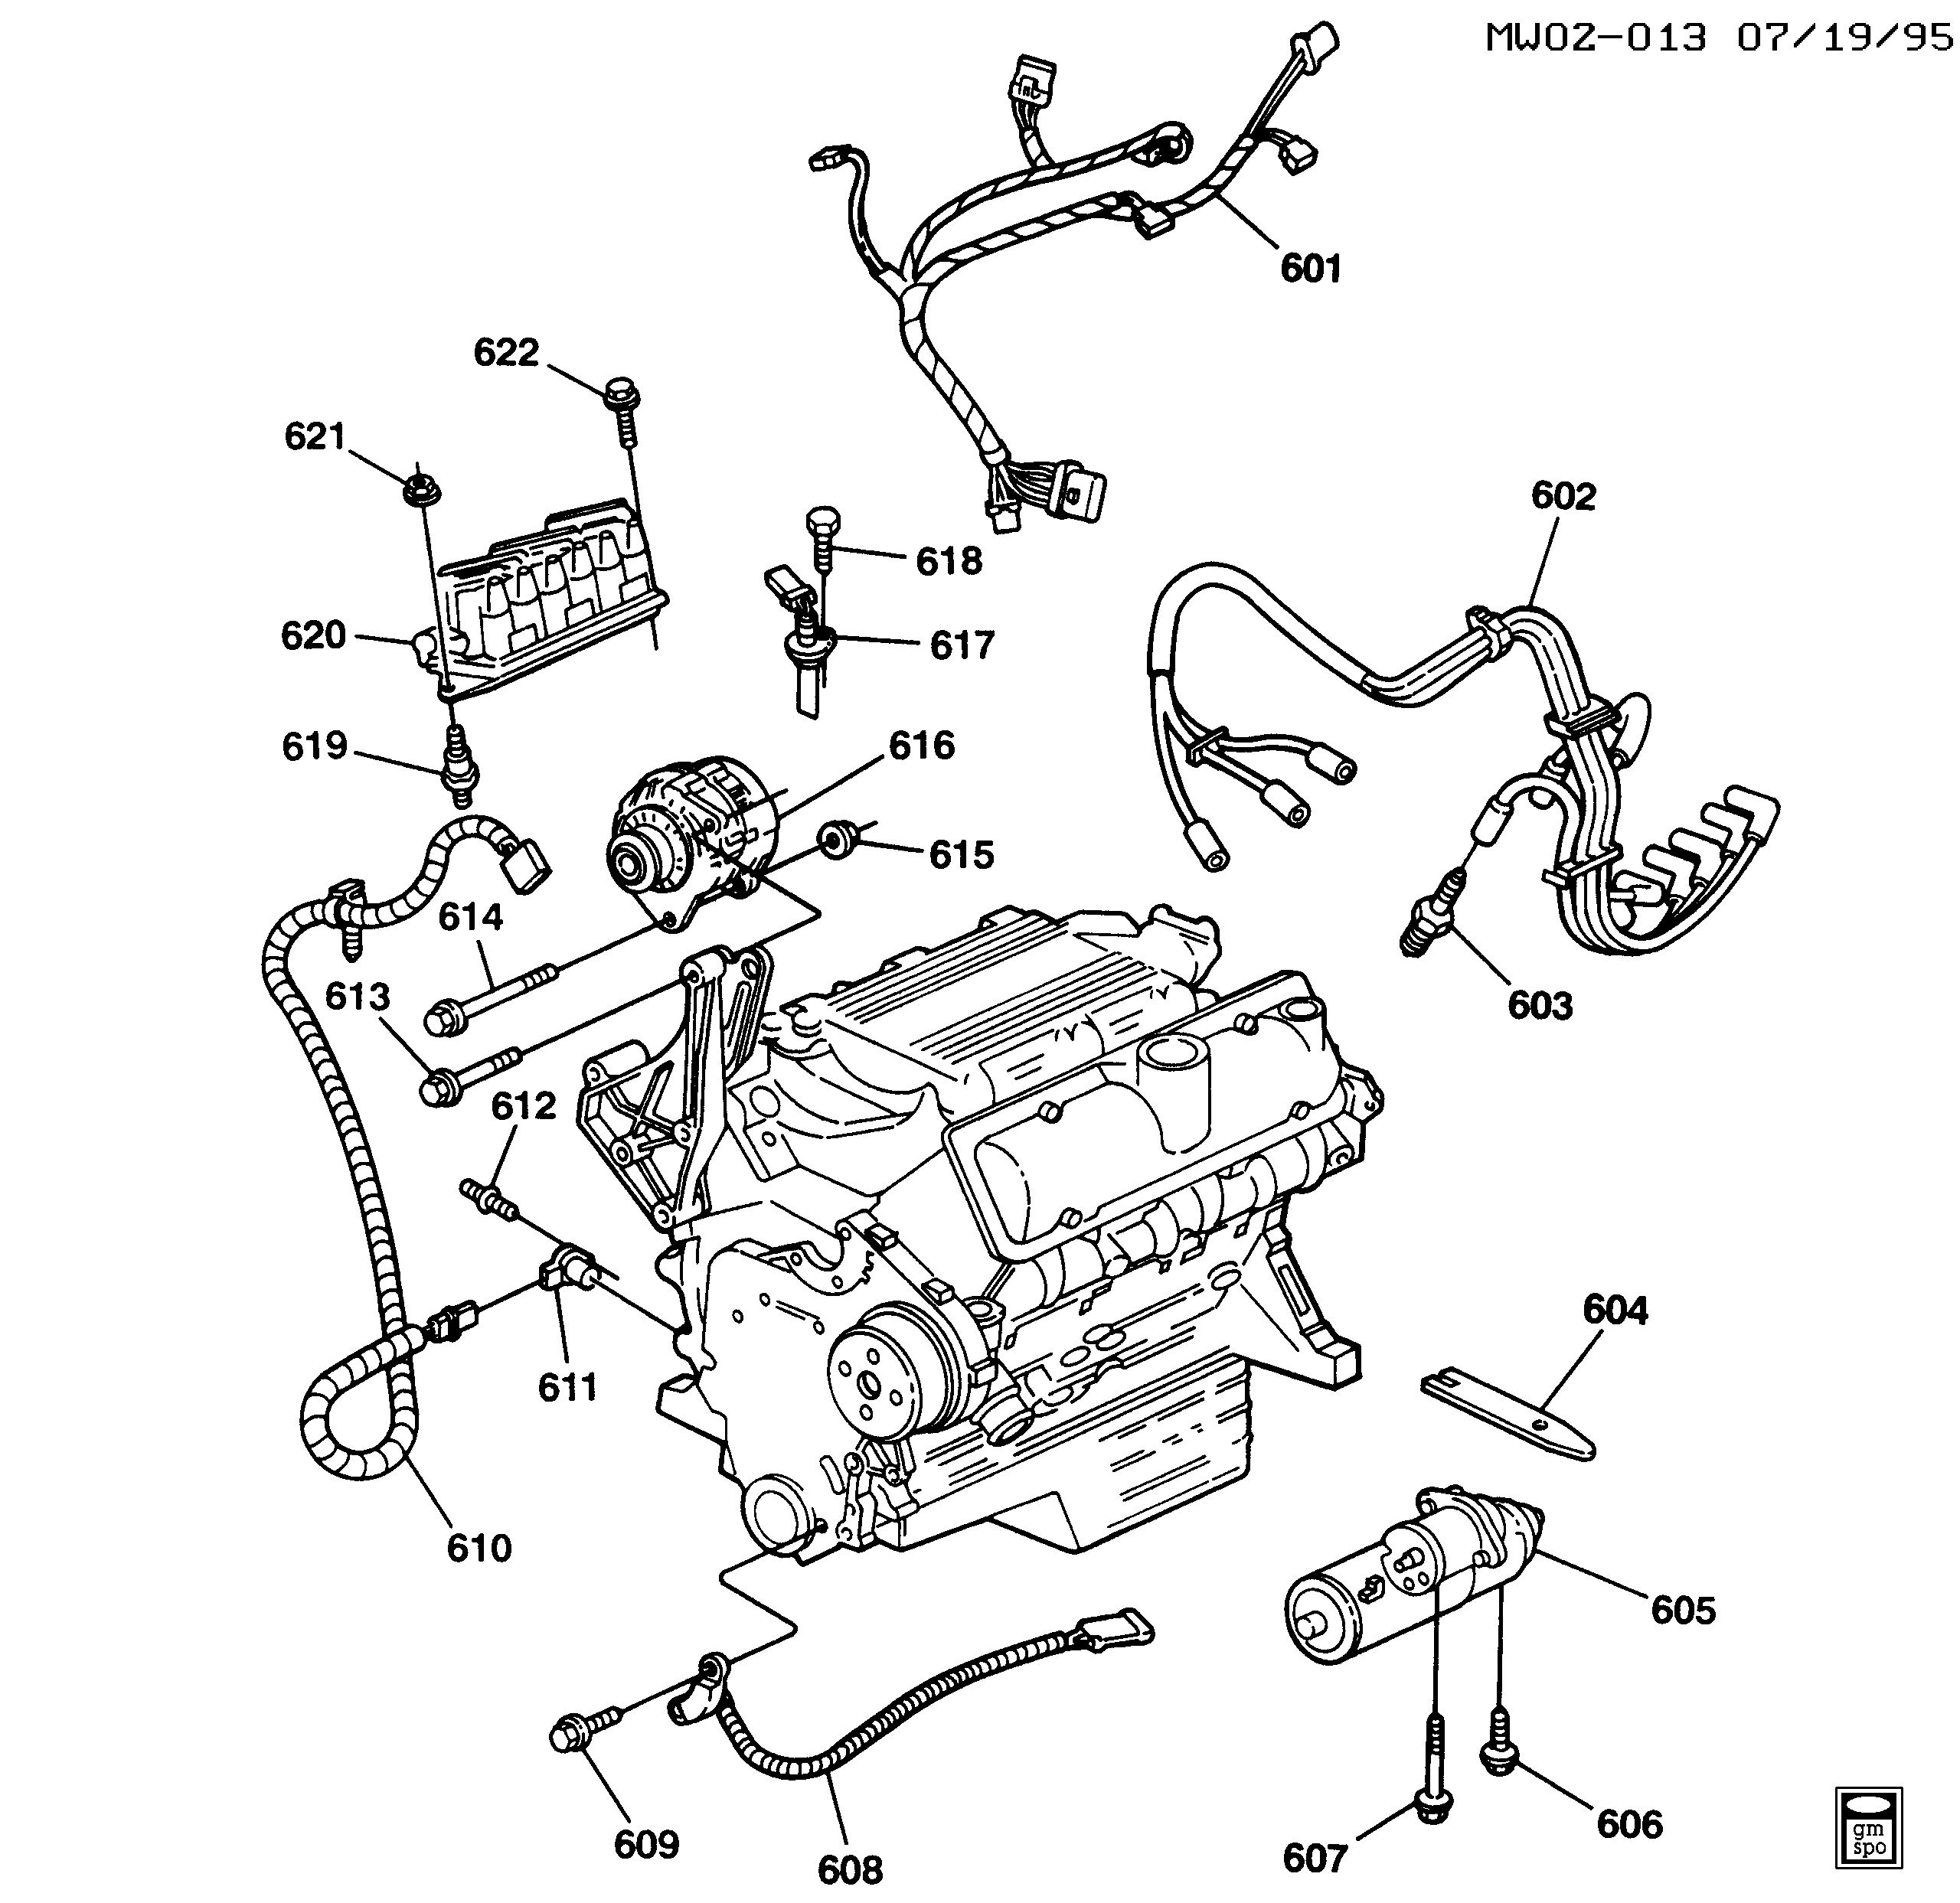 1995-1999 W ENGINE ELECTRICAL (L82/3.1M)